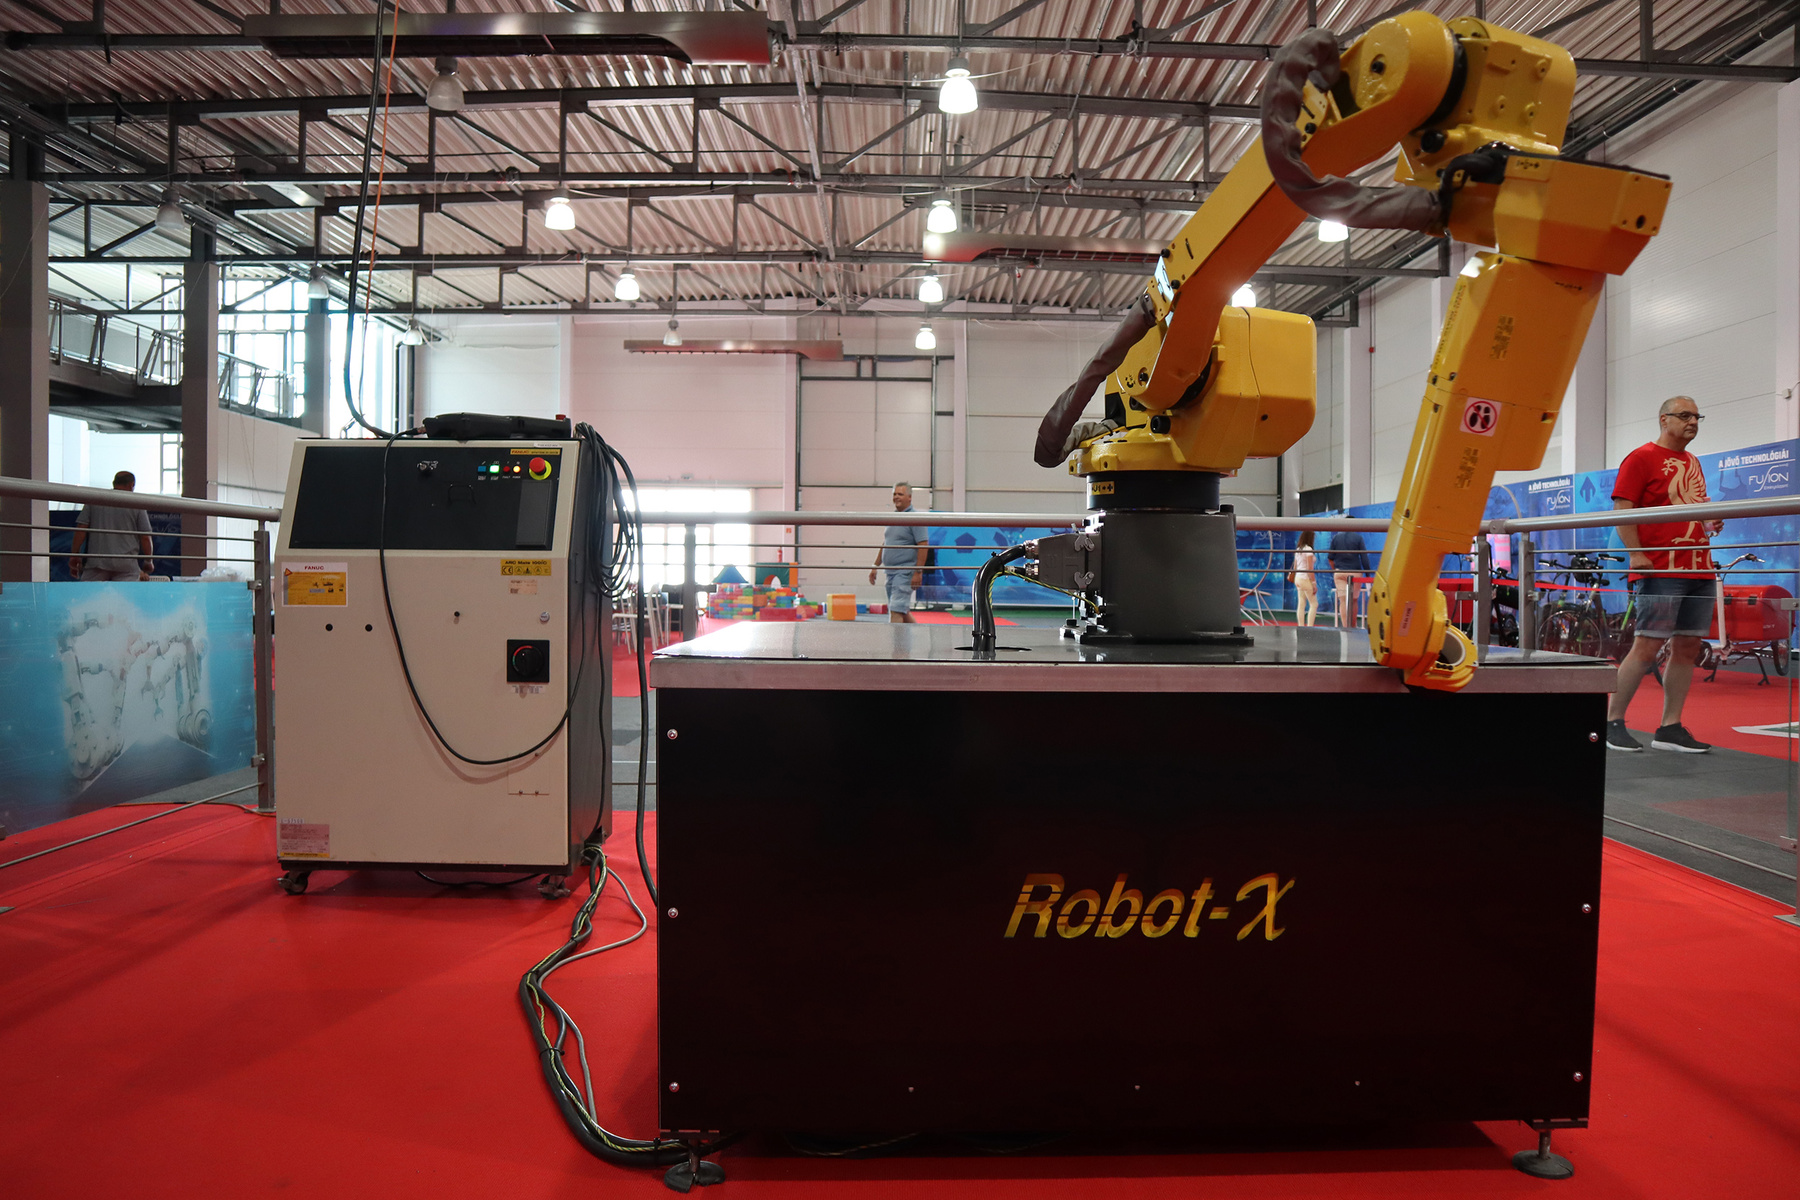 Magányos ipari robot karja leng előre beprogramozott ciklusokat követve.